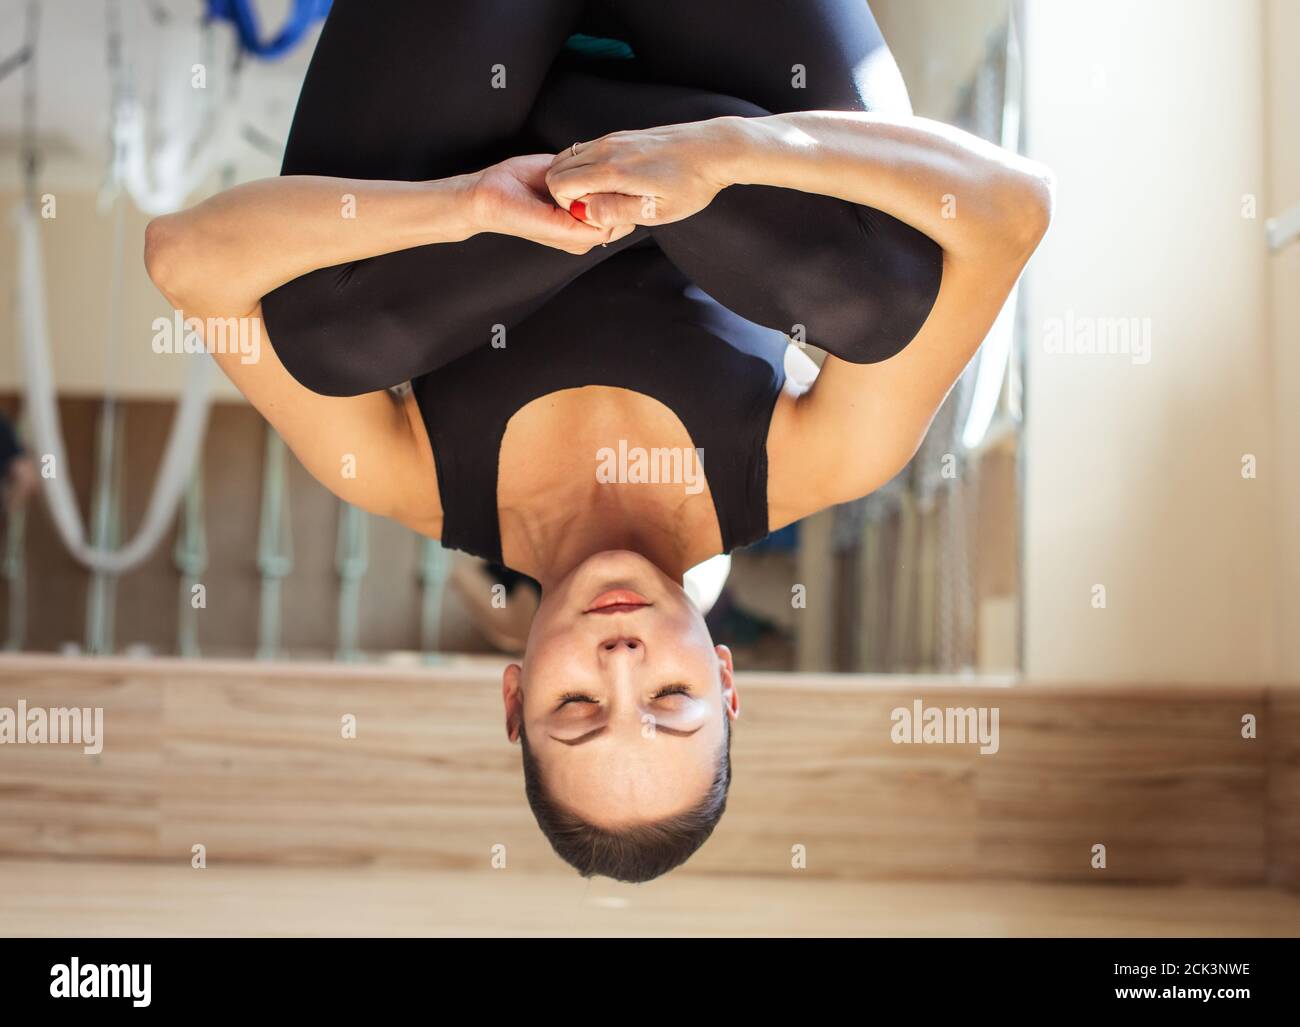 dormire nell'insolita pose.sportswoman si sta arricchiando mentre si appende nell'amaca blu. Foto Stock